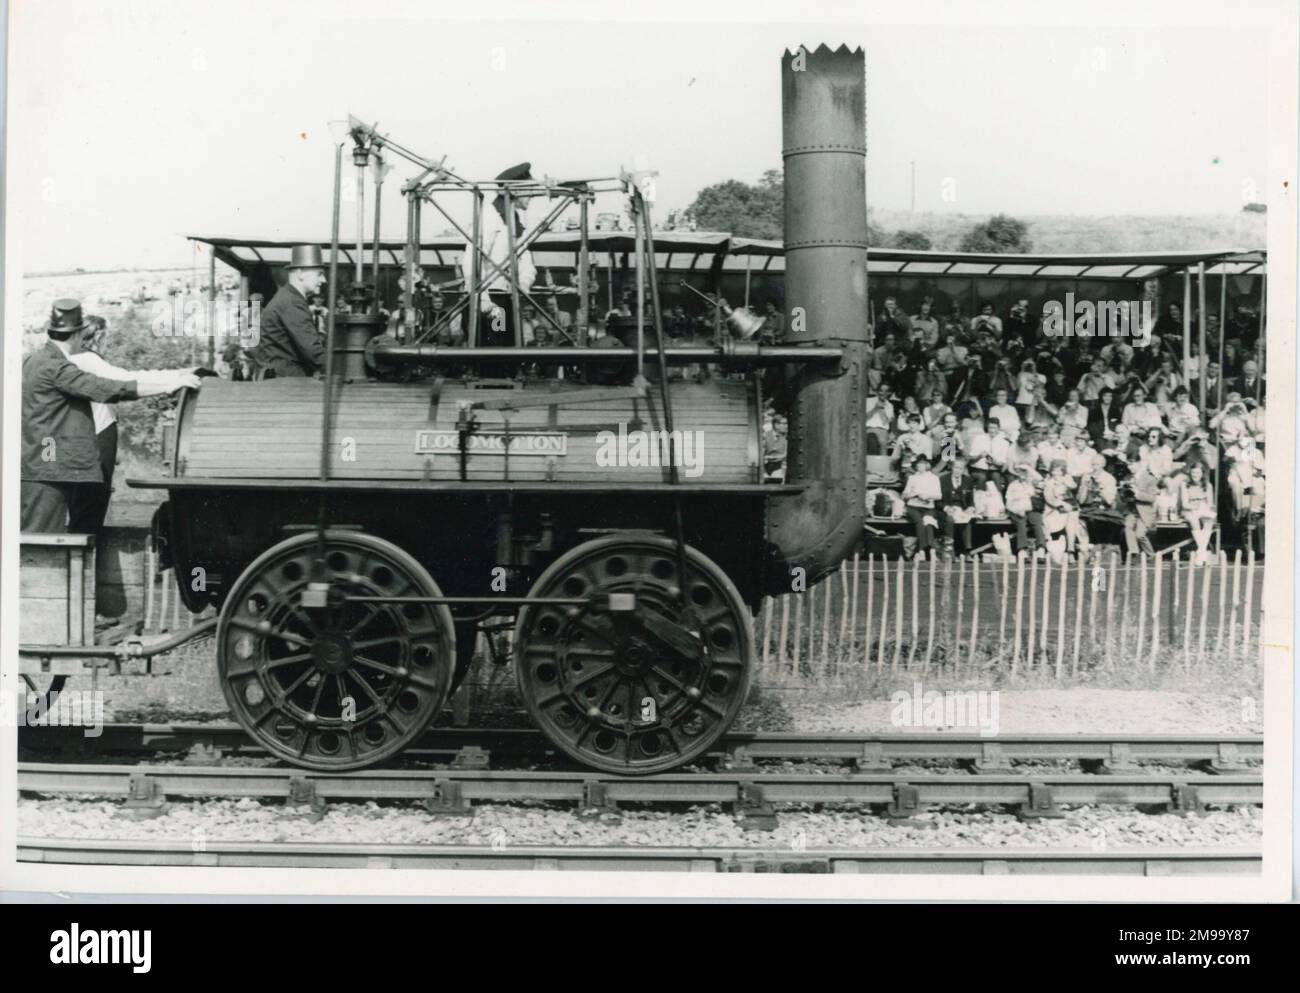 Die Lokomotive war die erste Lokomotive, die George Stephenson 1825 gebaut hat. Sie wurde bei den Centenary Celebrations gezeigt. Stockfoto